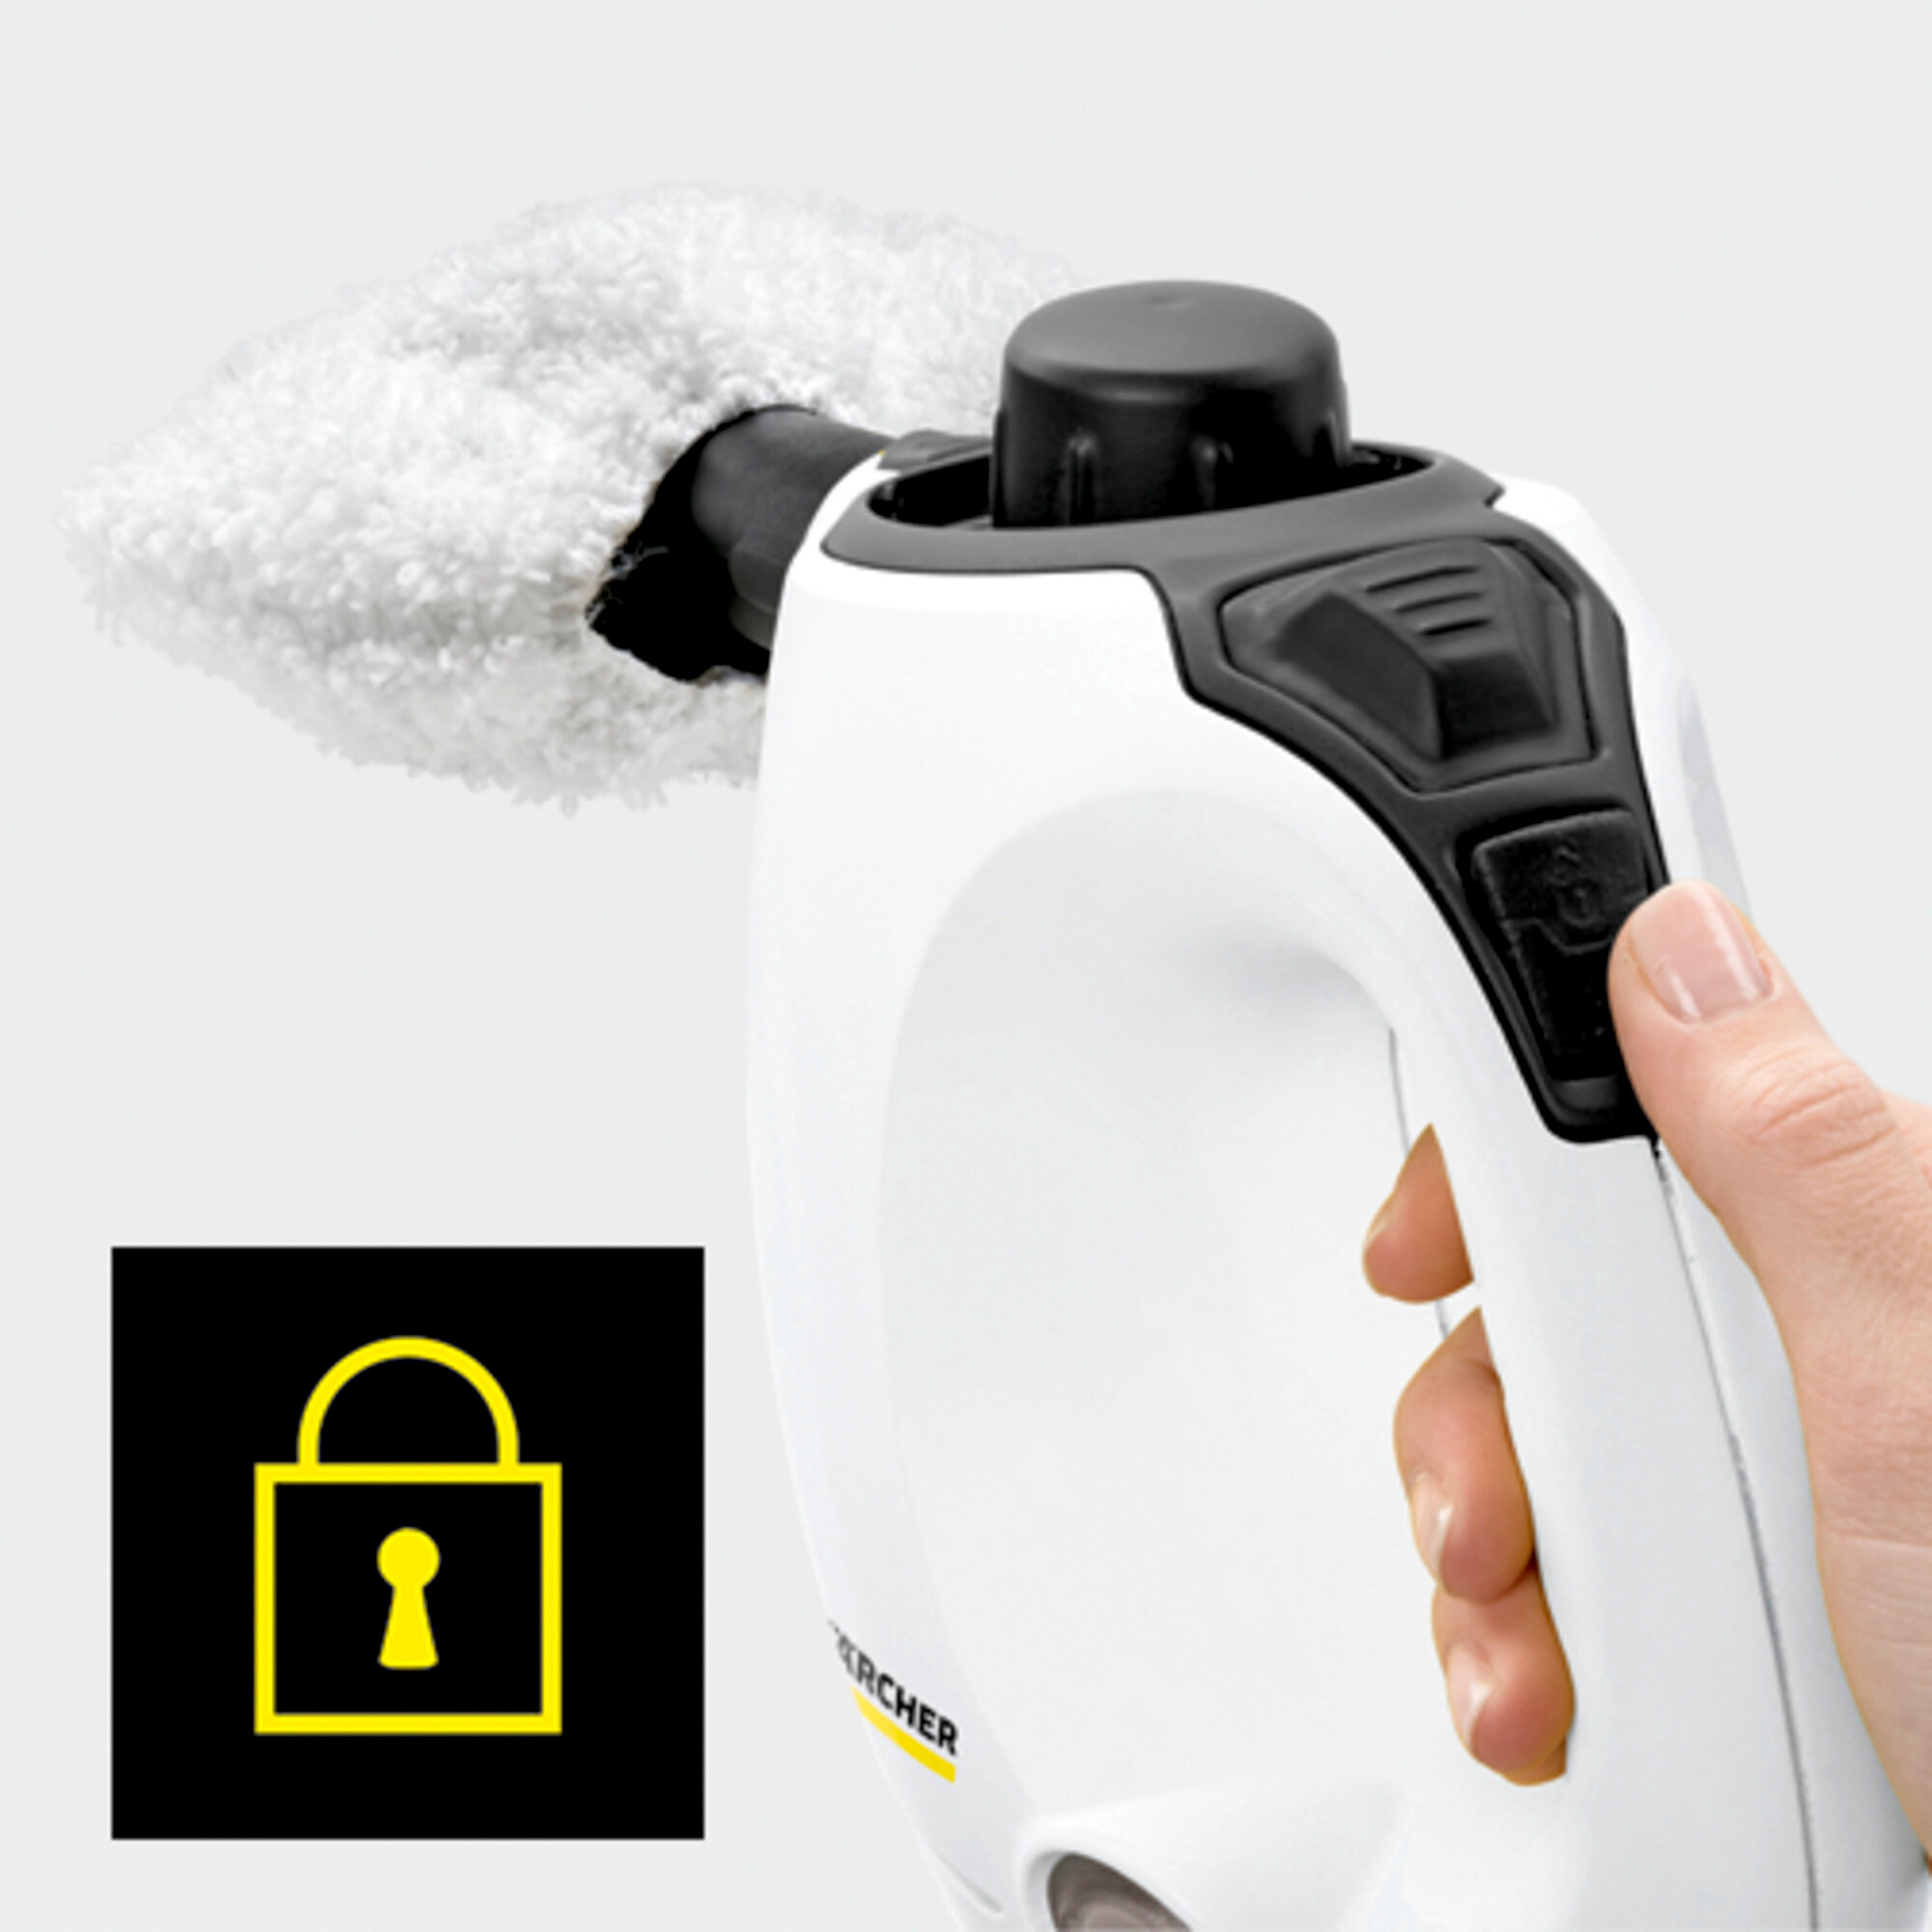 Parný čistič Parný čistič SC 1 Premium: Detská poistka na stroji